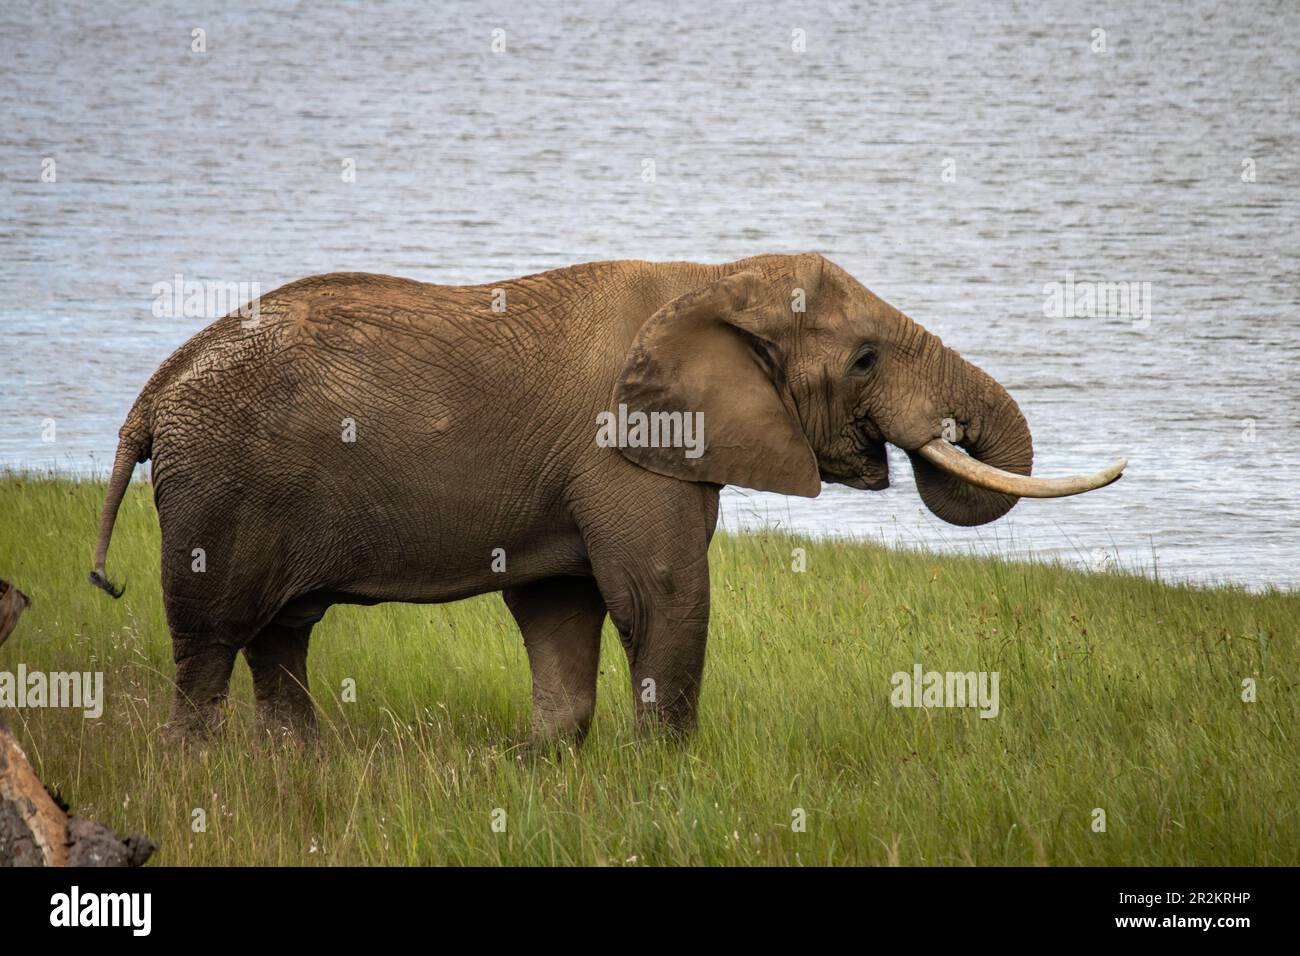 L'éléphan africain se promette à côté du lac dans le parc national de l'imire, au Zimbabwe Banque D'Images